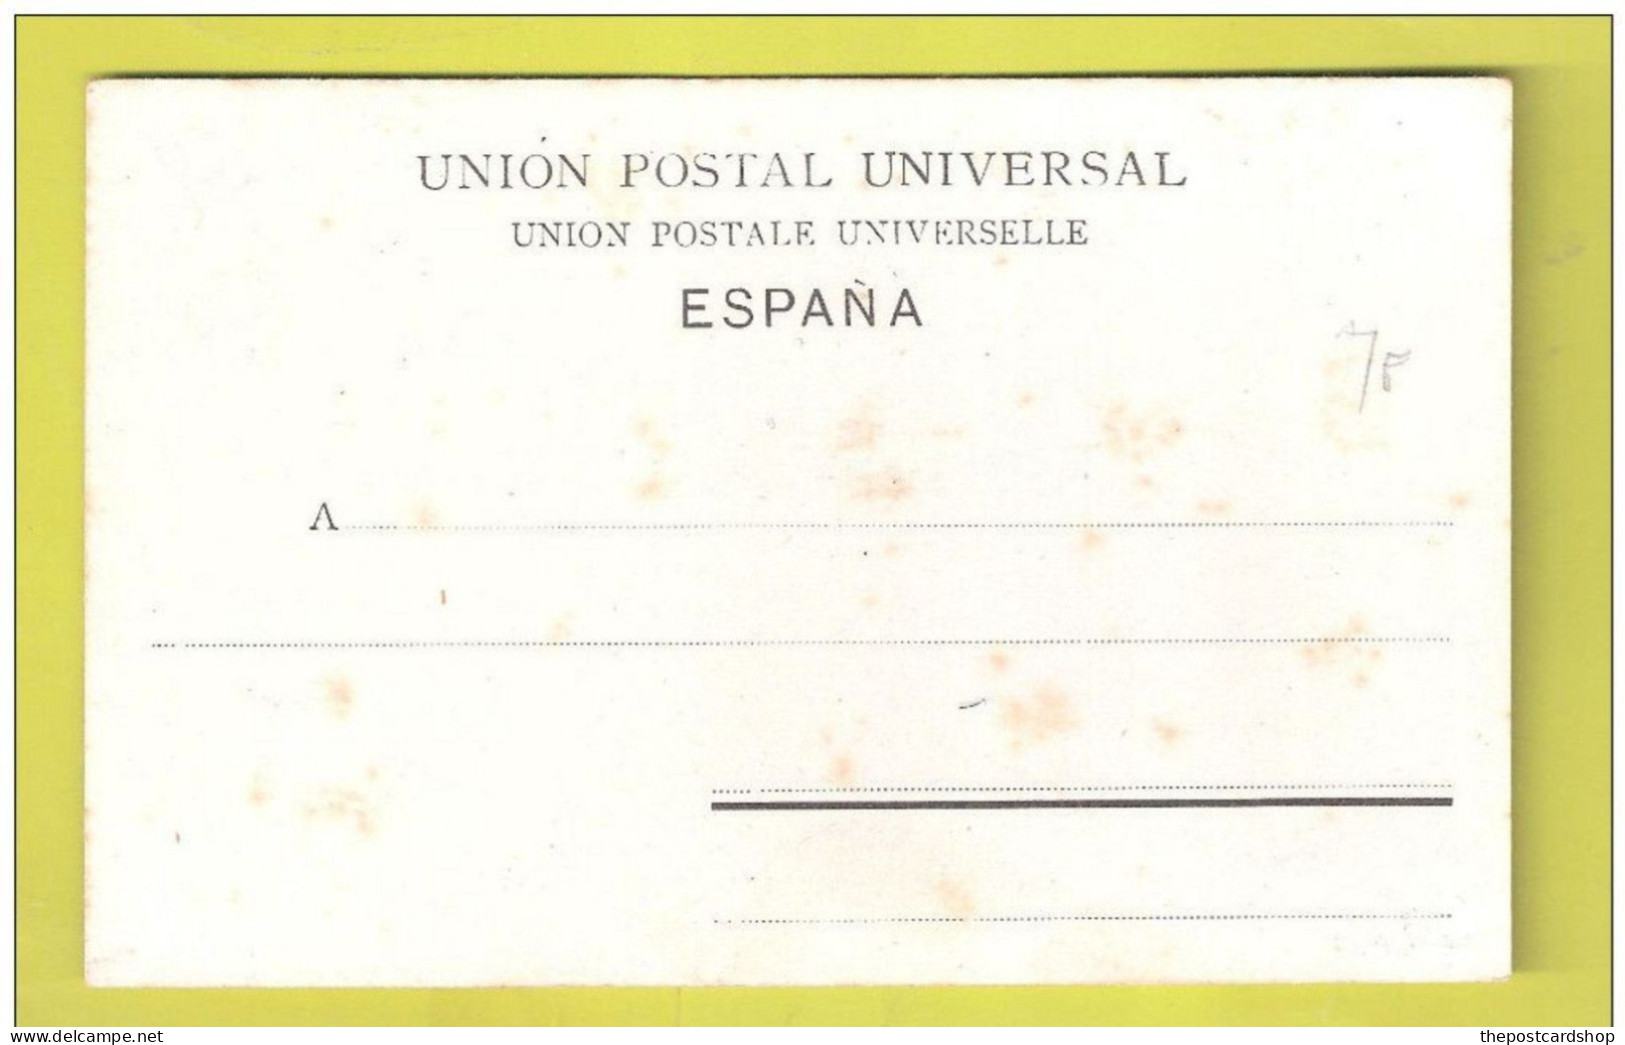 HUELVA EL MUELLE DESDE ELMAR Tarjeta Postal Retro Indiviso DOS SIMPLE NON CIRCULADA Unused Pre-cursor Unused Spain - Huelva